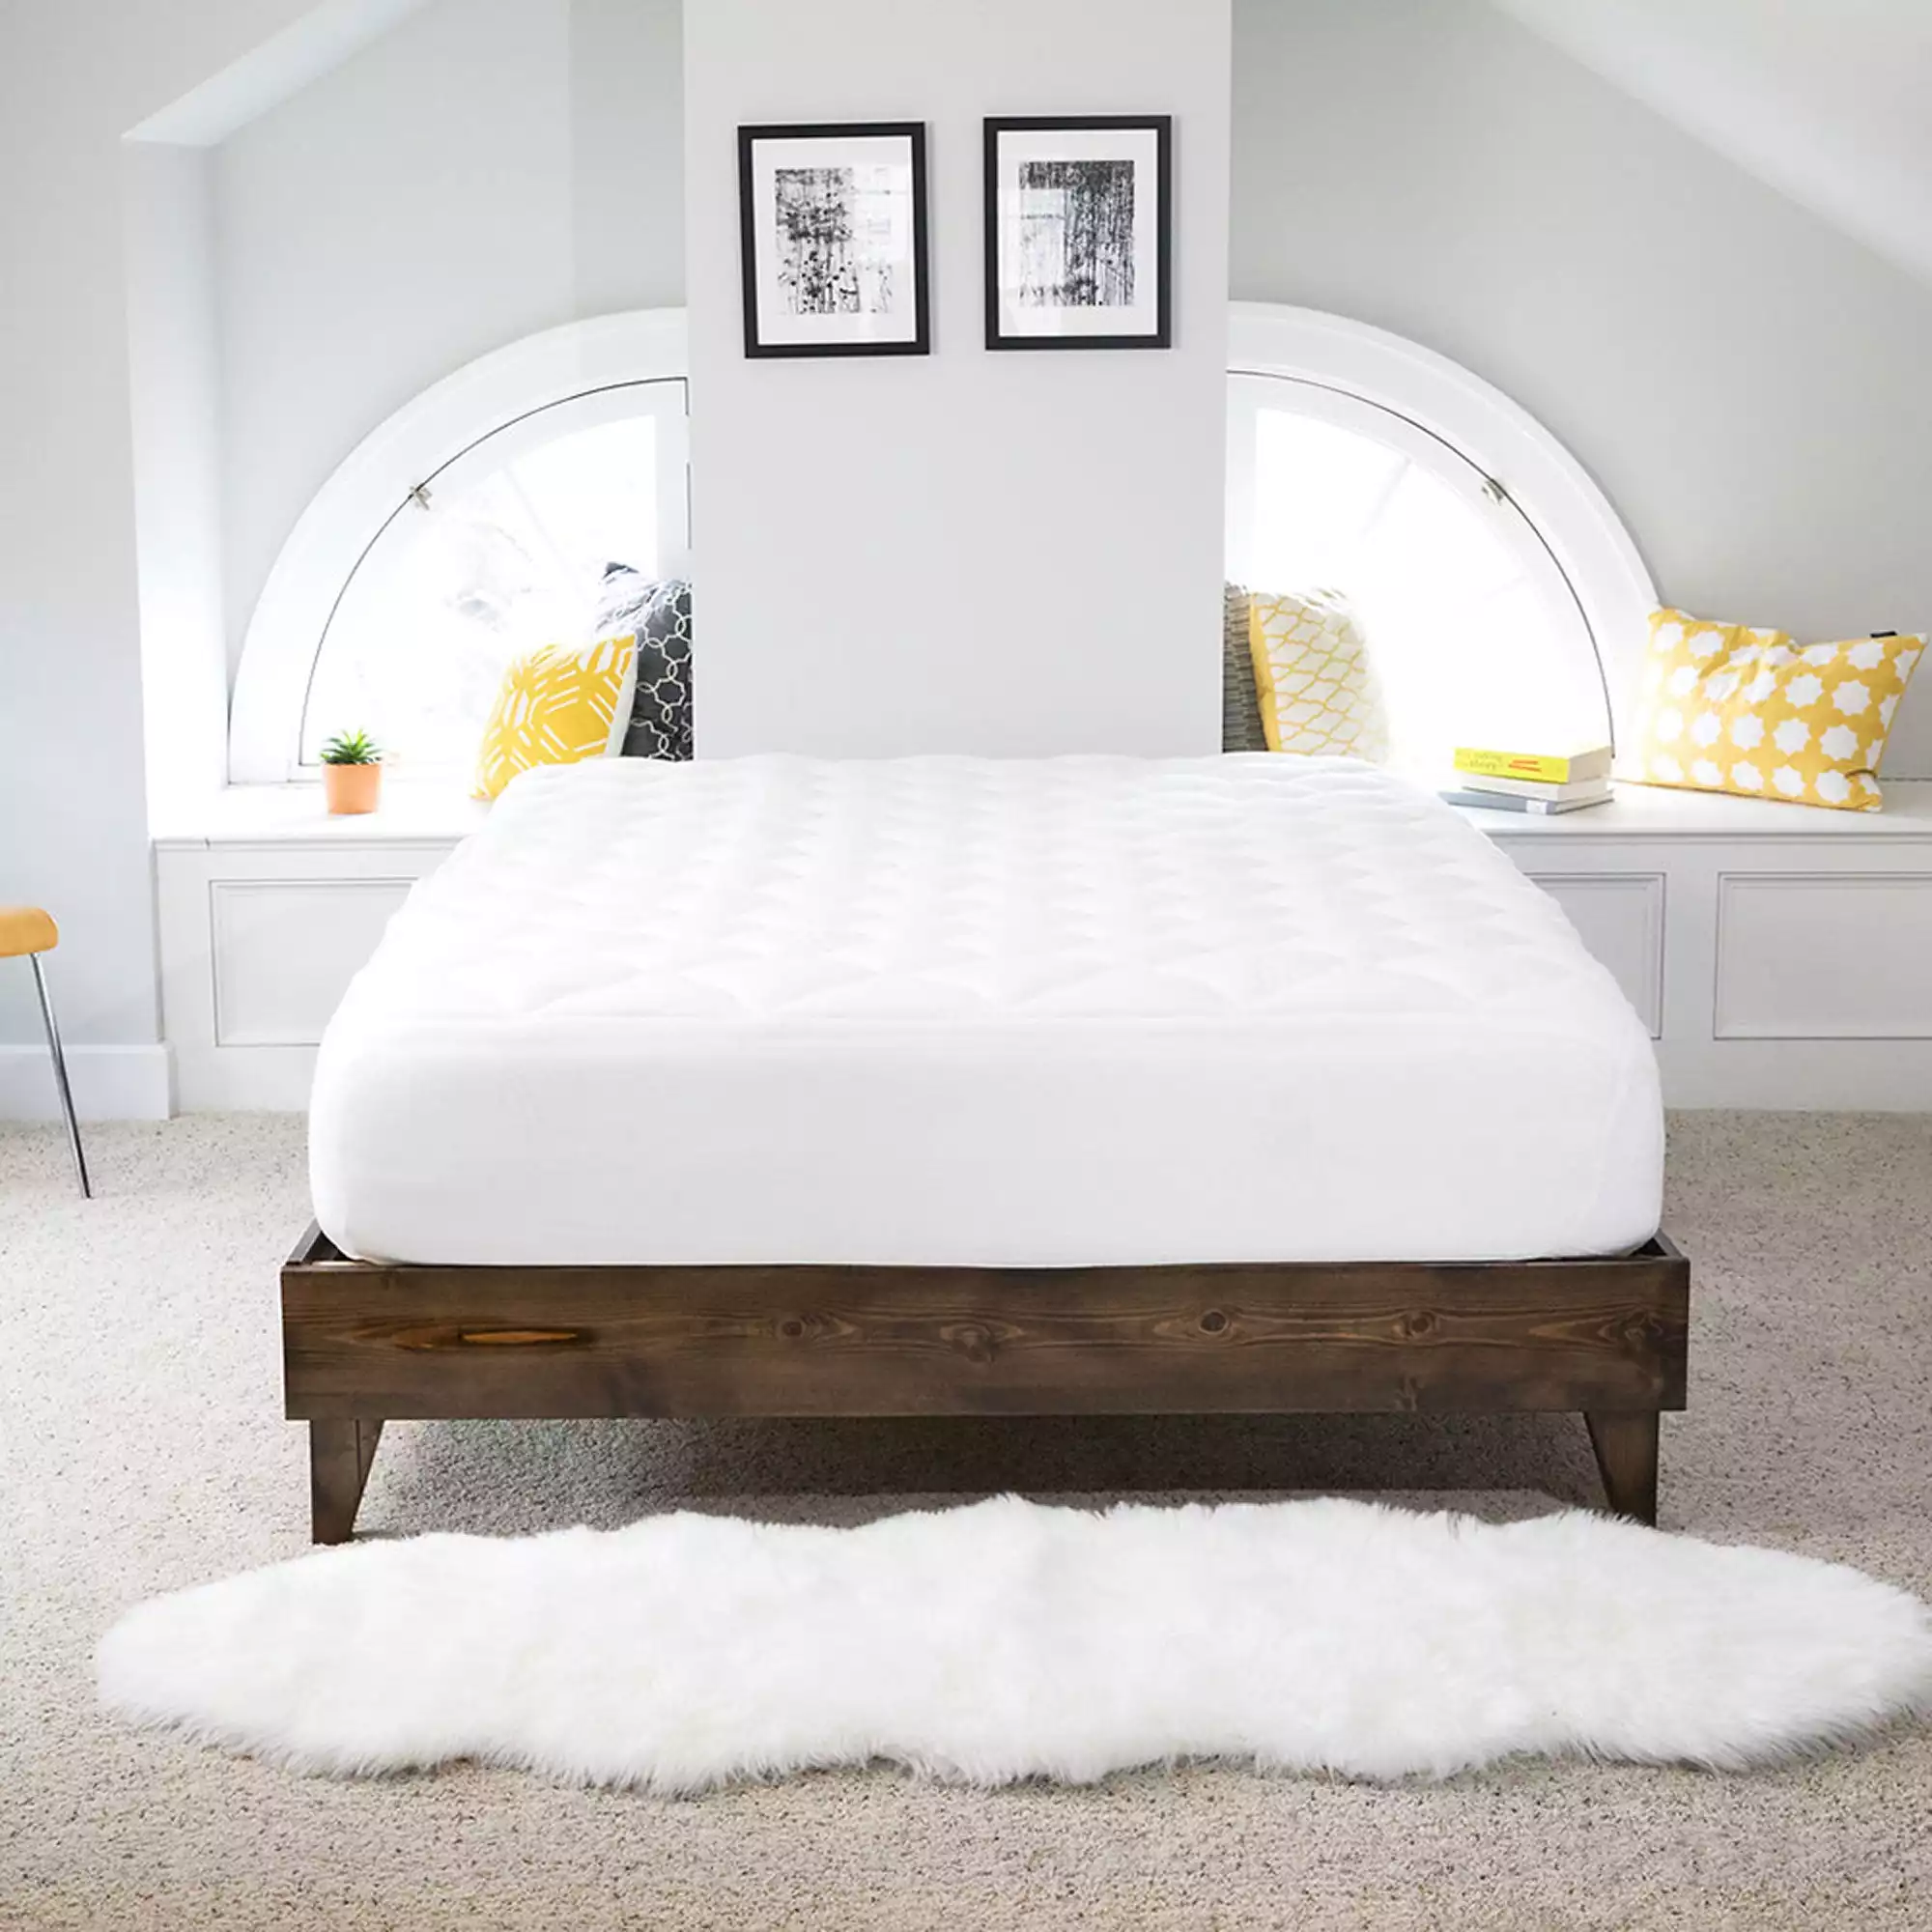 The Solid Wood Platform Bed